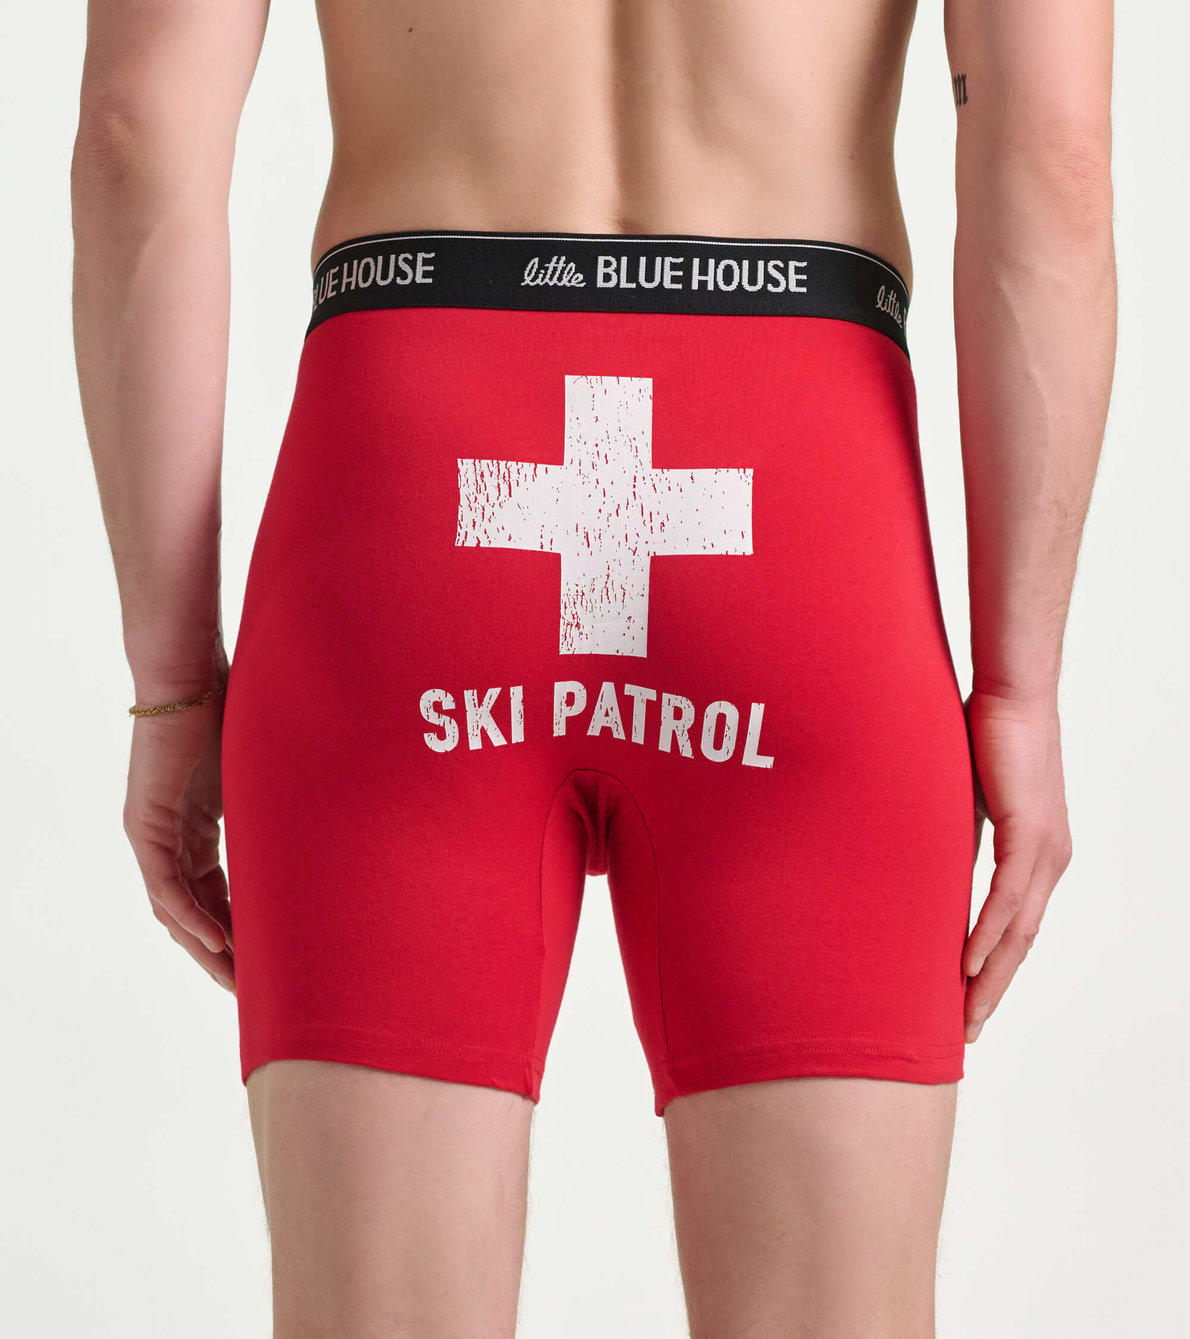 View larger image of Men's Ski Patrol Boxers